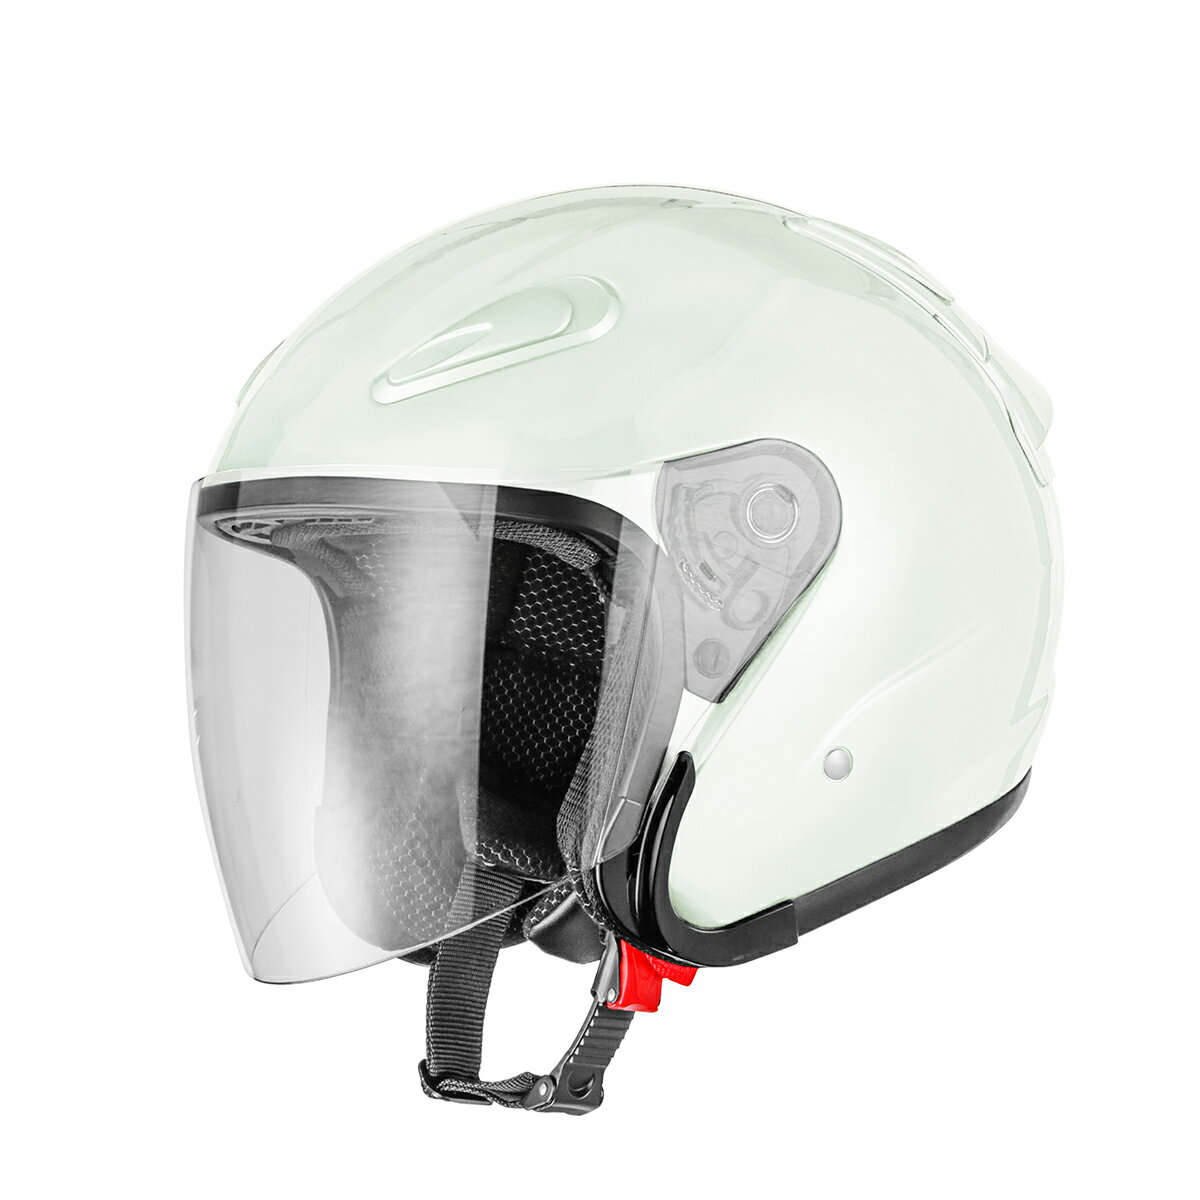 バイクヘルメット エアロフォルムジェットヘルメット ホワイト Mサイズ SG規格適合 PSCマーク付 バイク オートバイ ヘルメット バイクパーツセンター